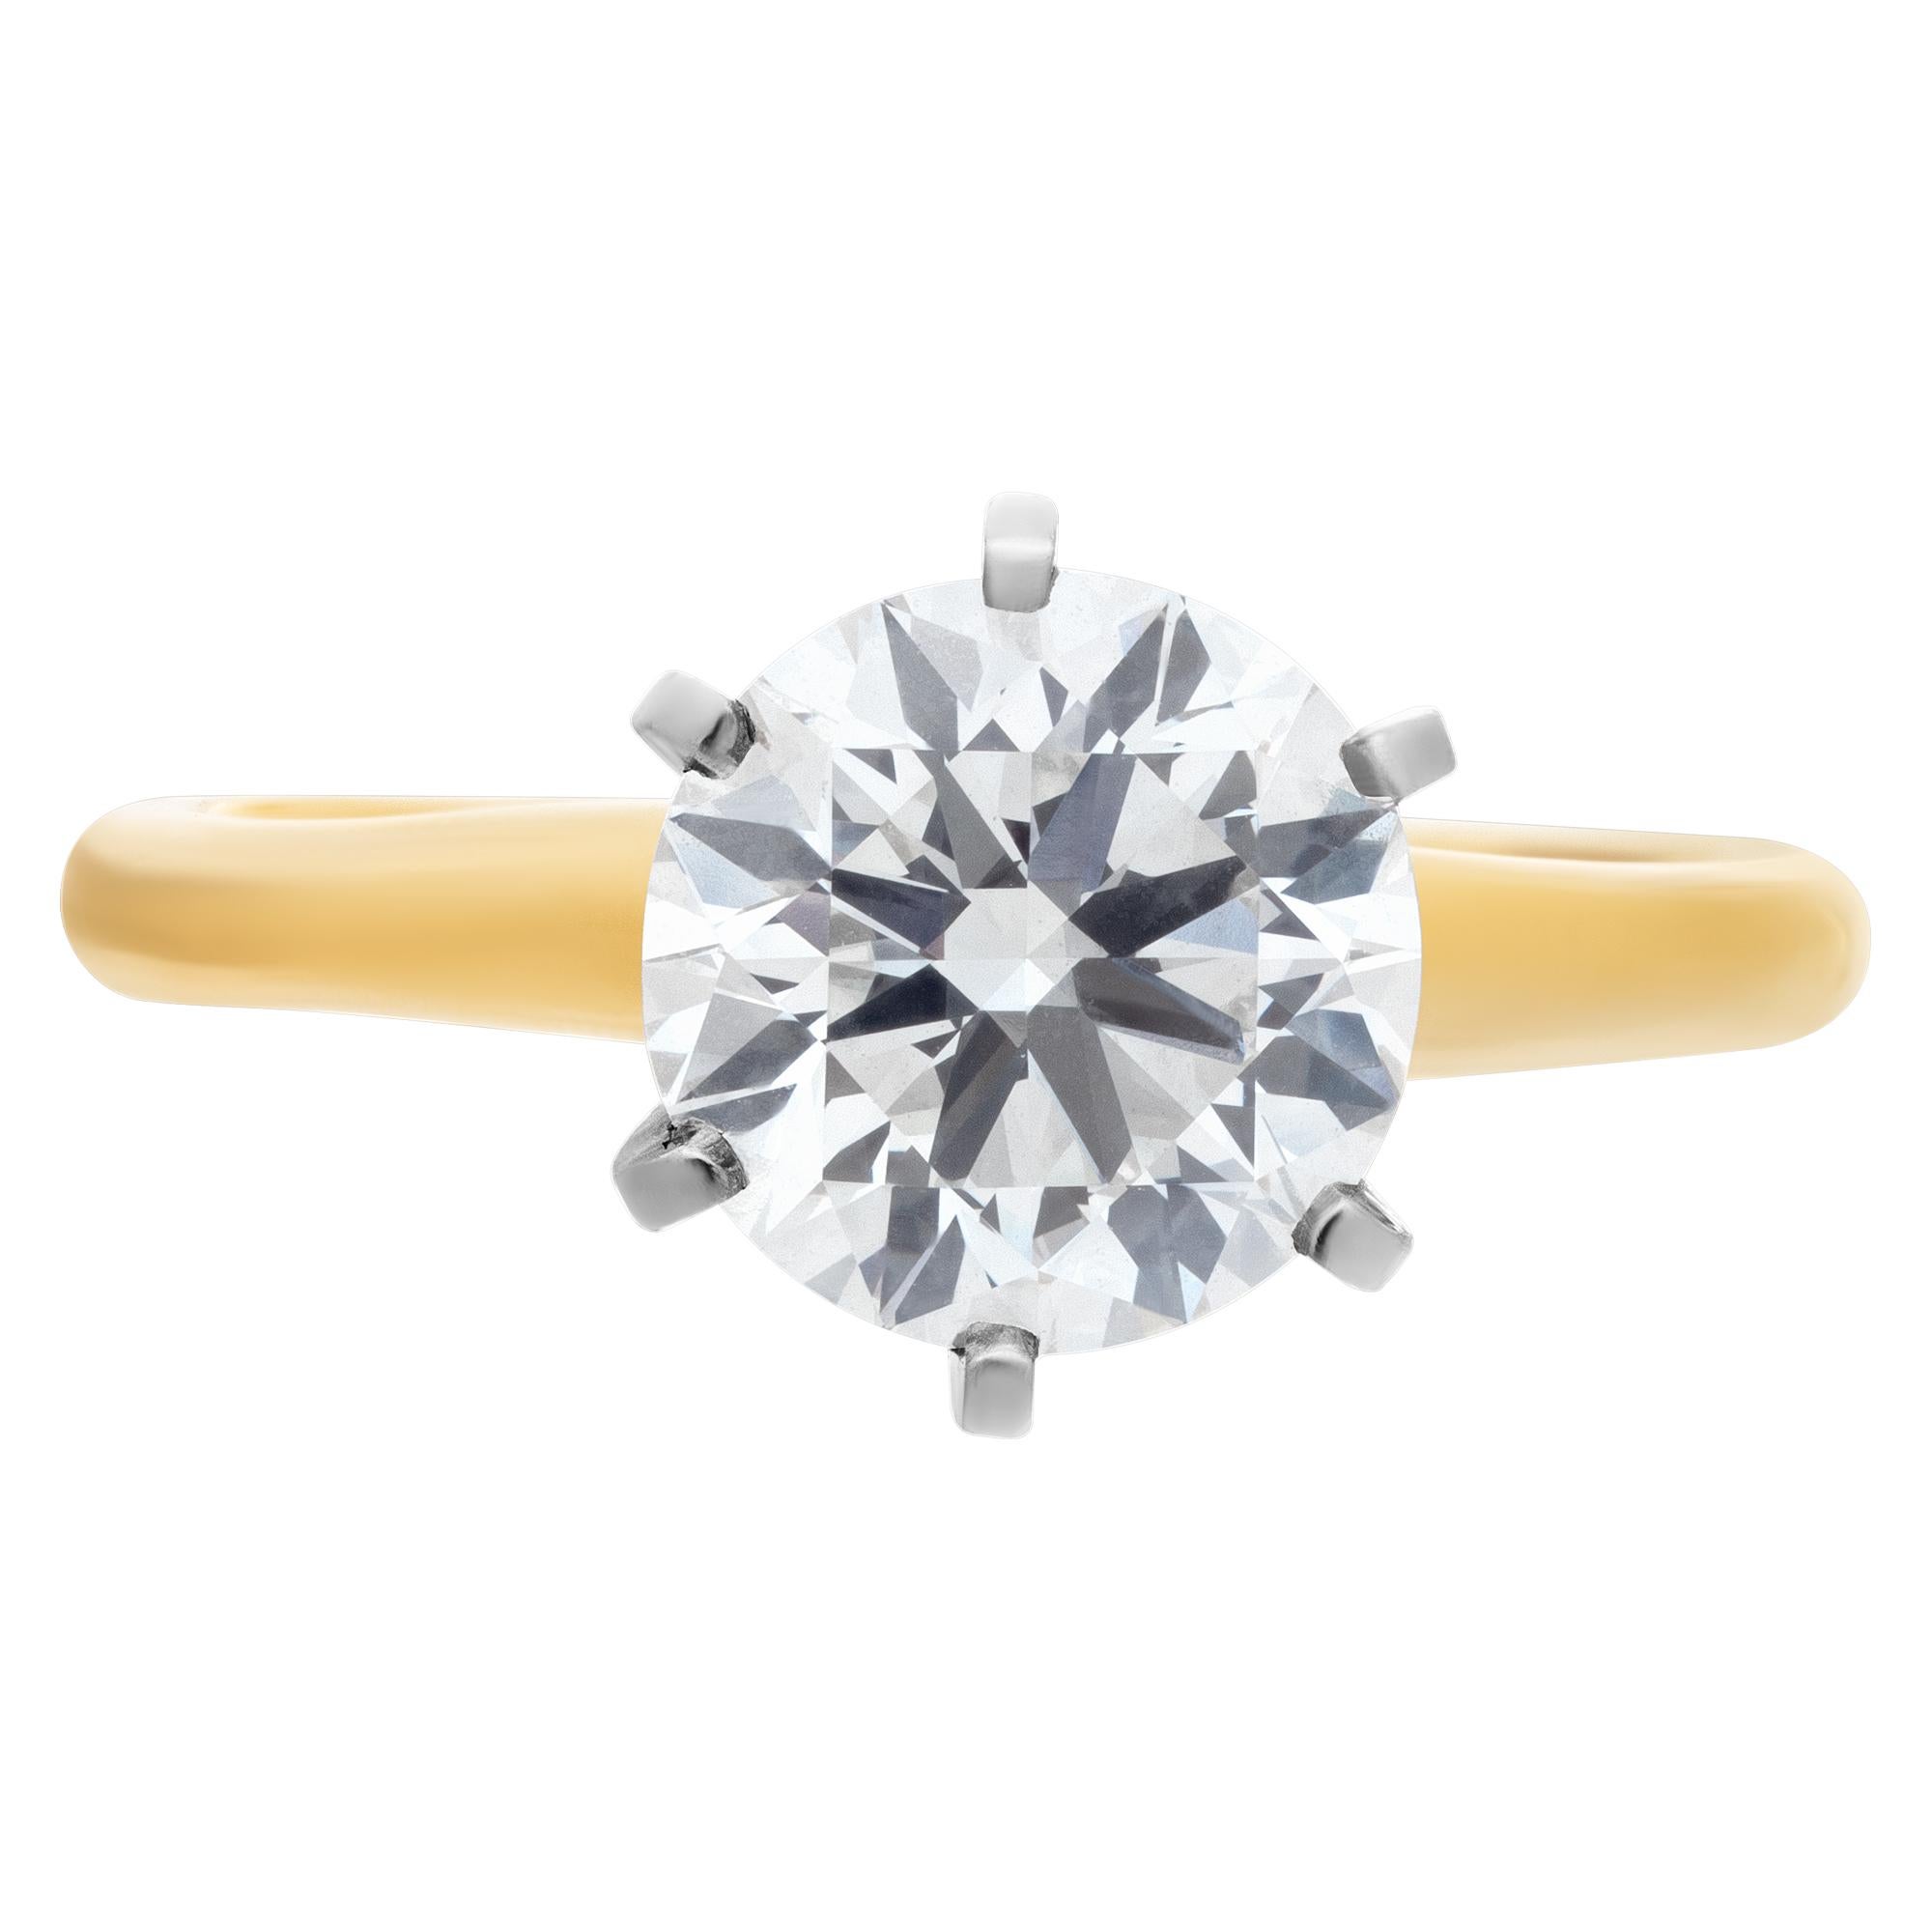 GIA-zertifizierte runde Brillantschliff Diamant 2,02 Karat (G Farbe, VVS2 Klarheit) Solitär-Ring in 14k Gelbgold Einstellung mit Weißgold 6 Zacken gesetzt. Größe 6

Dieser GIA-zertifizierte Ring hat derzeit die Größe 6. Einige Artikel können nach